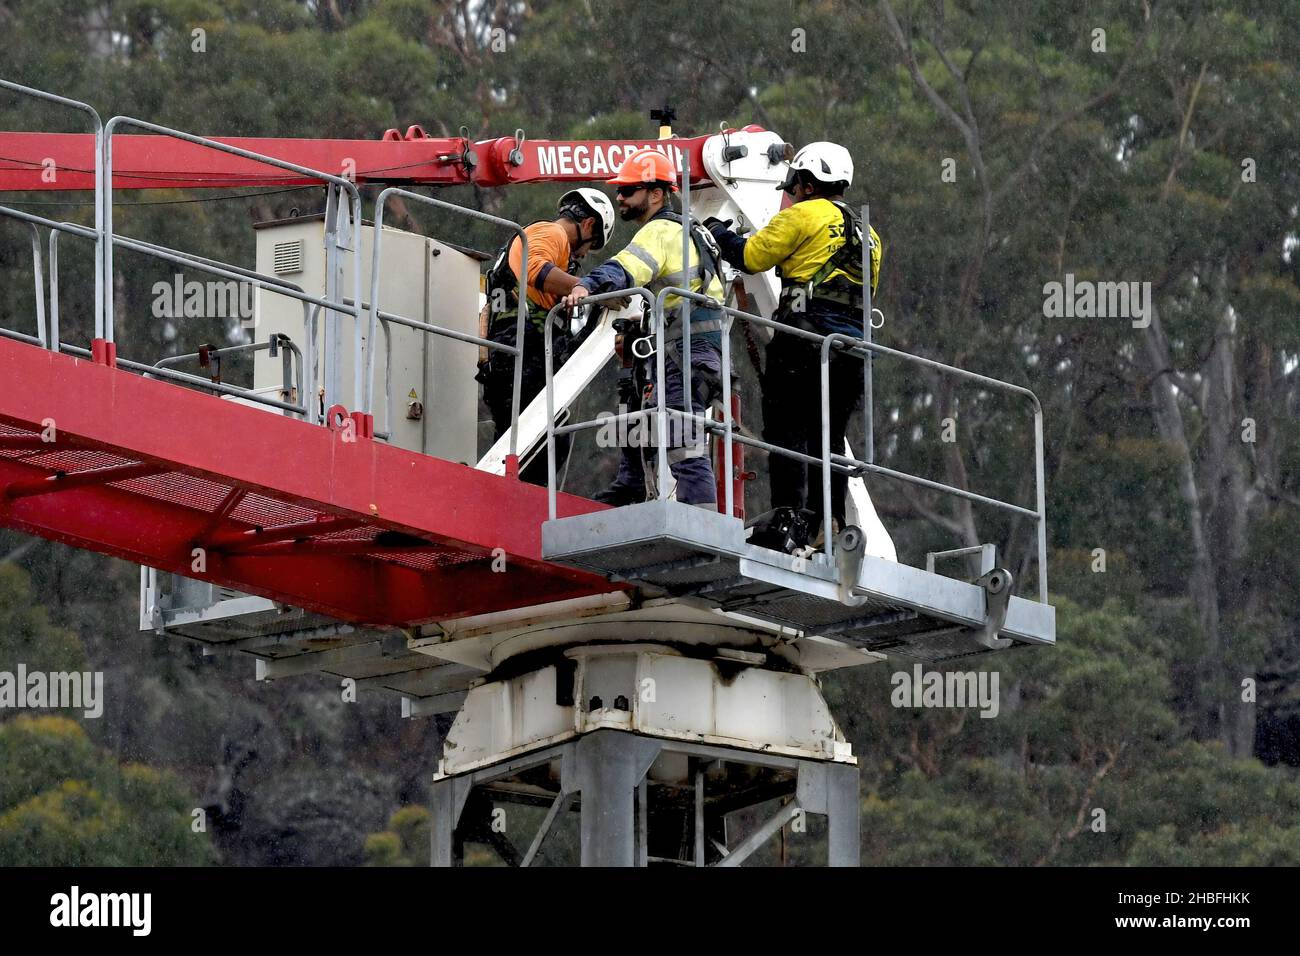 9:27 am 7 dicembre 2021: Gosford, NSW, Australia. Operai che disassemblano la Torre Crane in loco (rimuovendo la maschera del contatore) sulla casa sociale a 5 Foto Stock